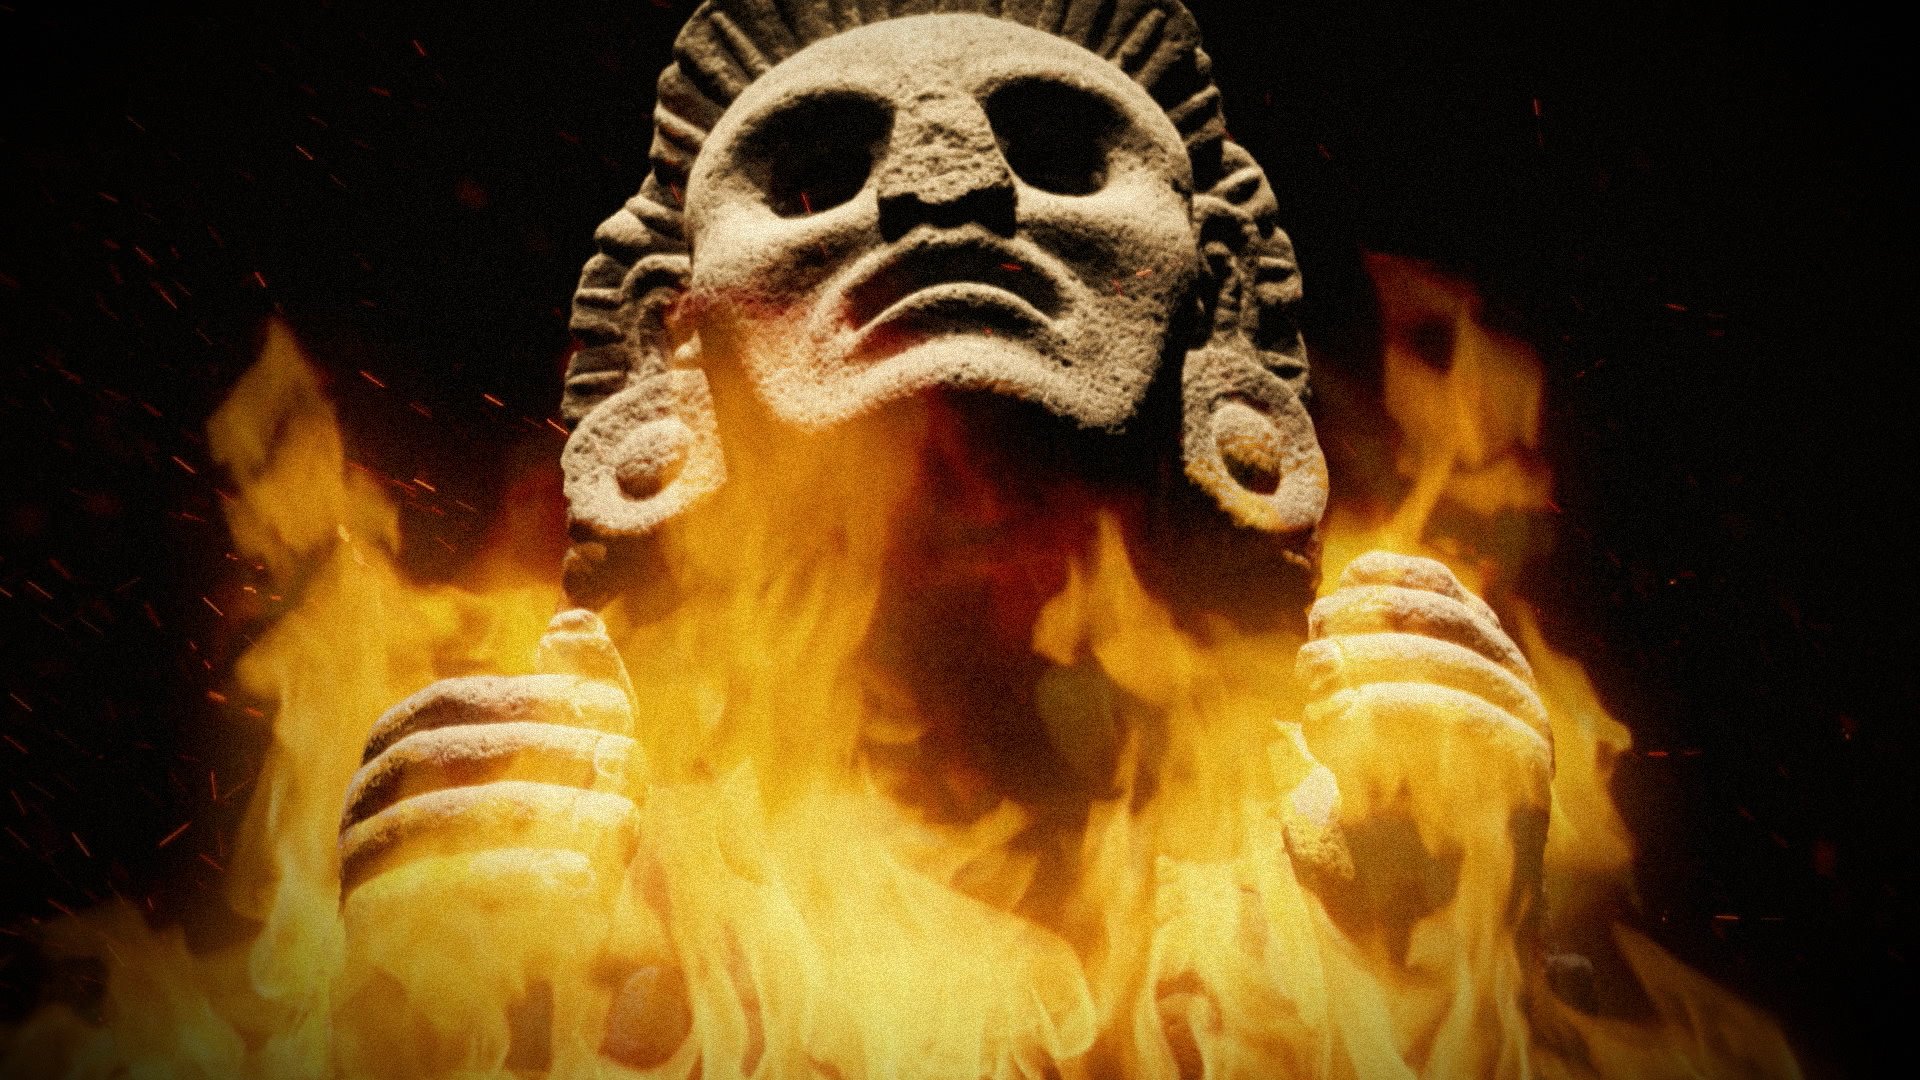 Mayan Apocalypse